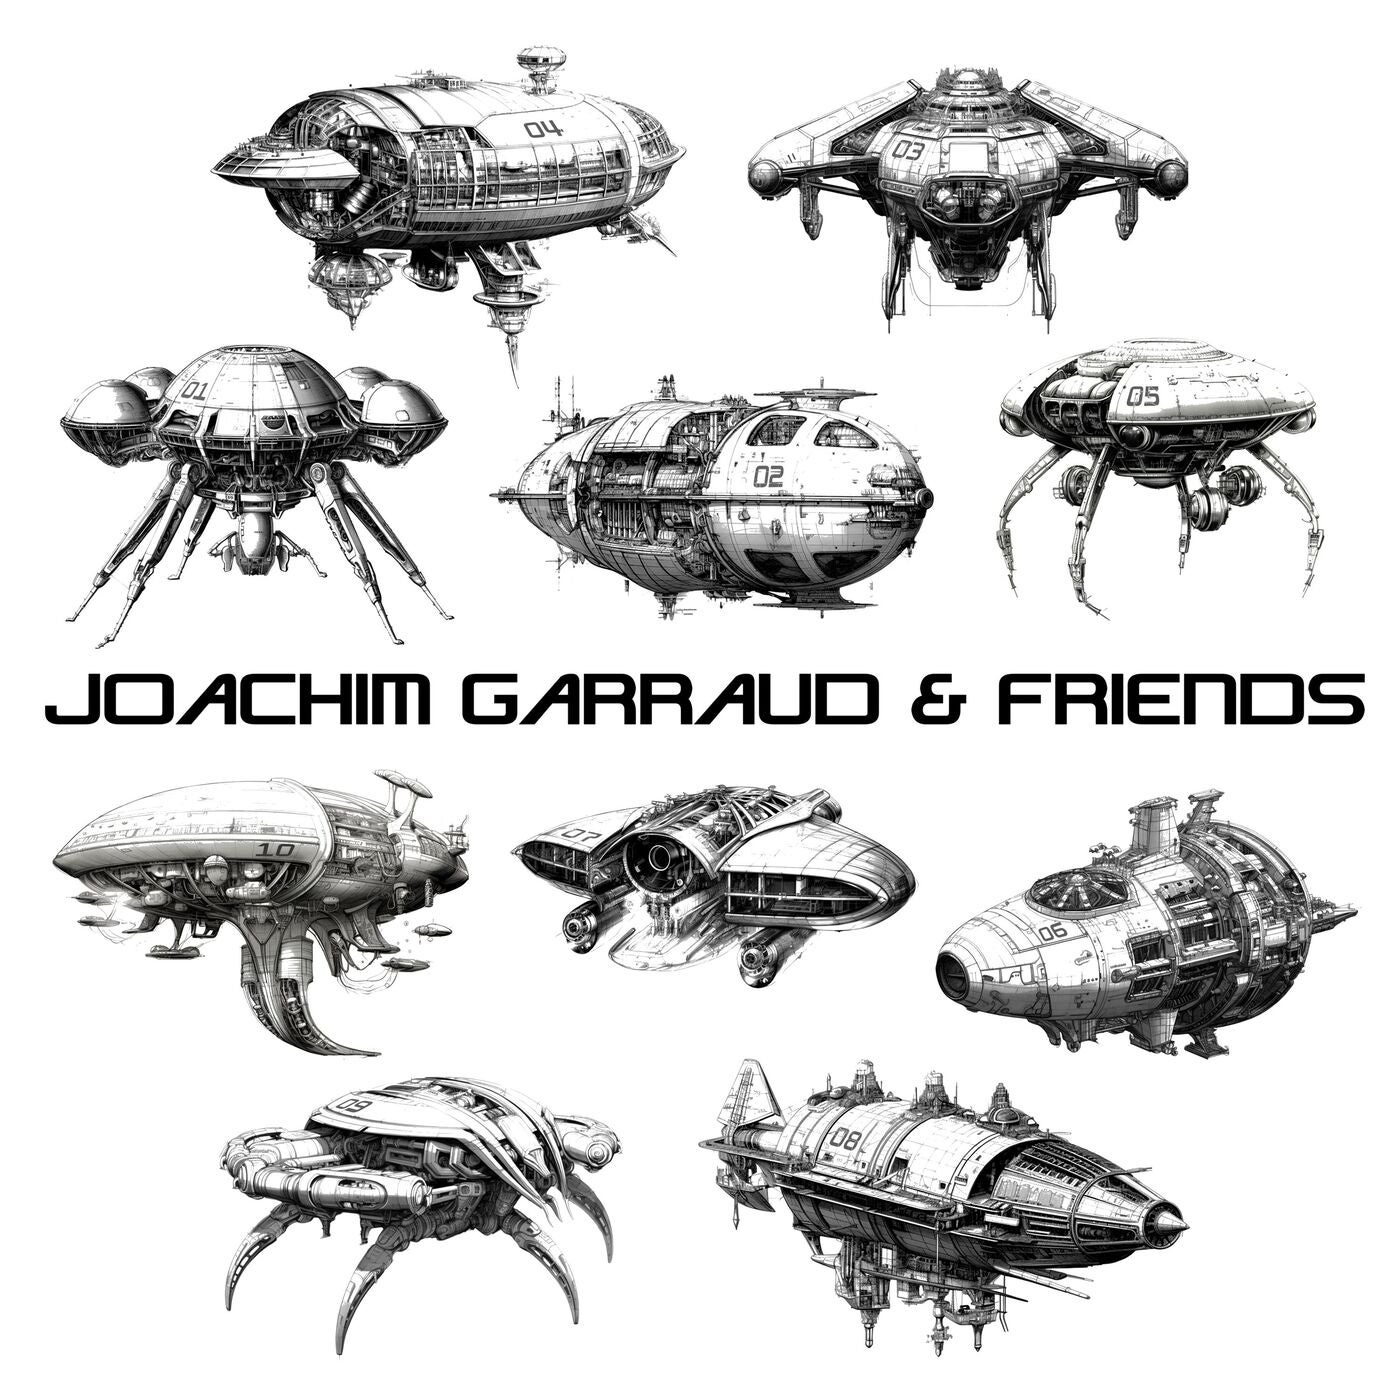 Joachim Garraud & Friends